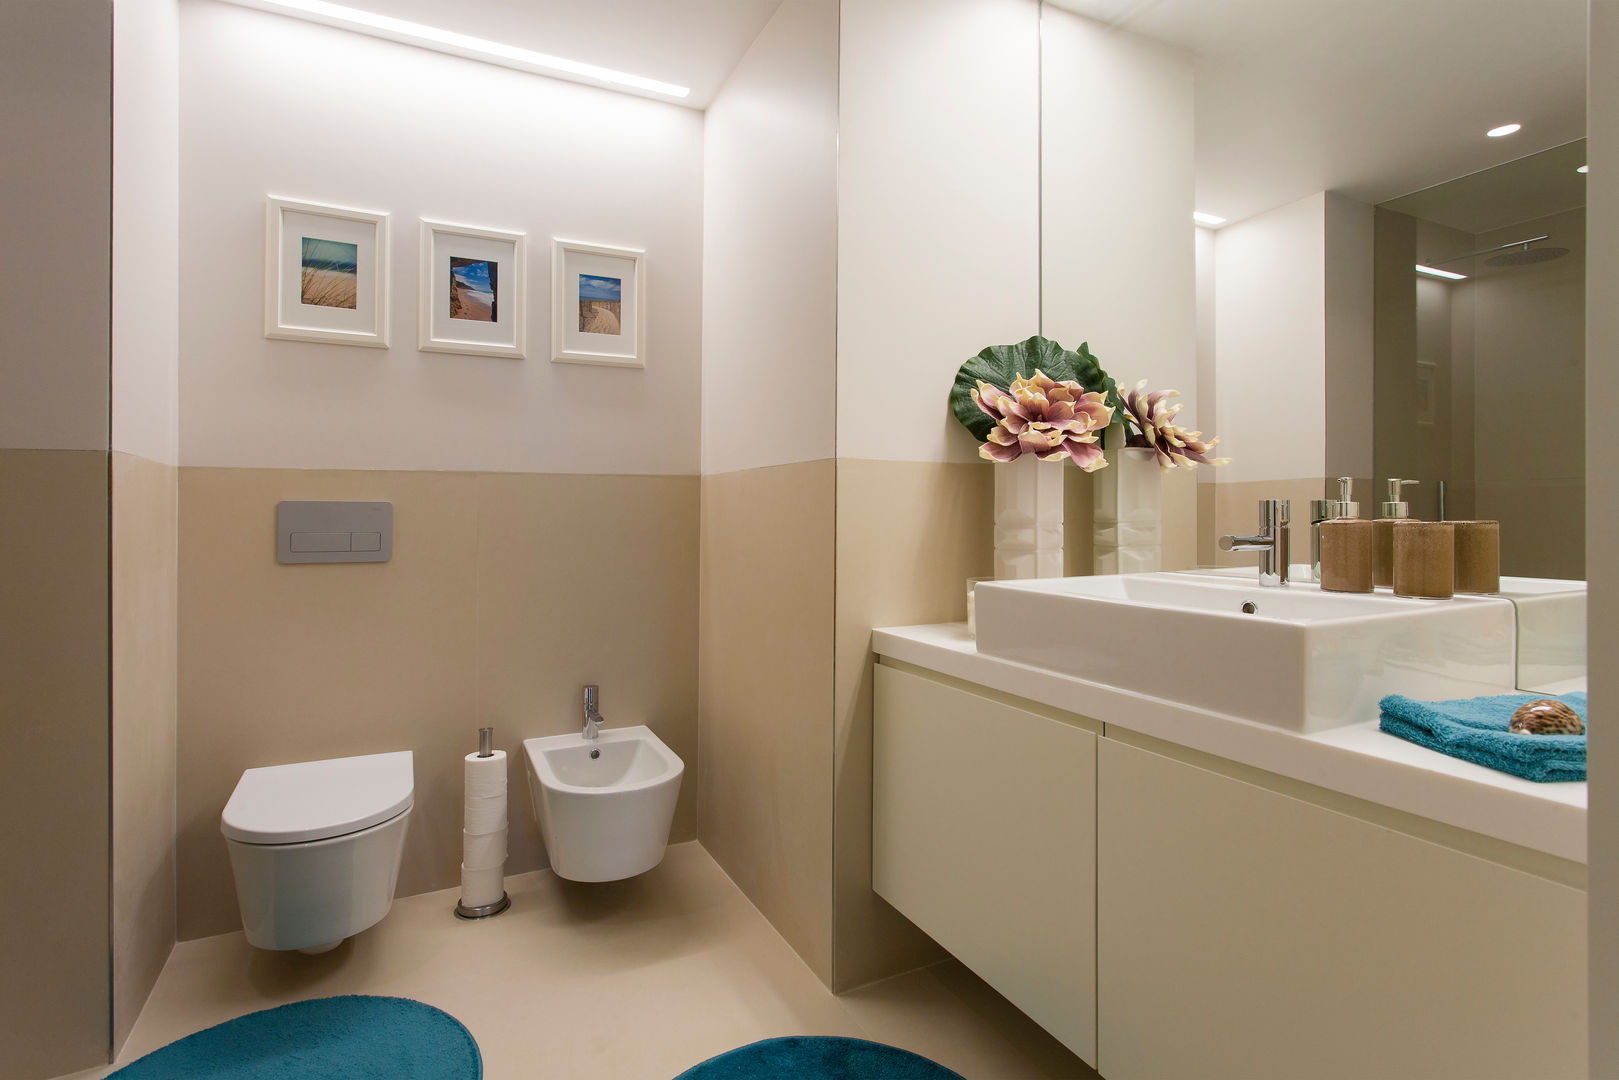 Andar Modelo - Oeiras, Traço Magenta - Design de Interiores Traço Magenta - Design de Interiores Modern bathroom